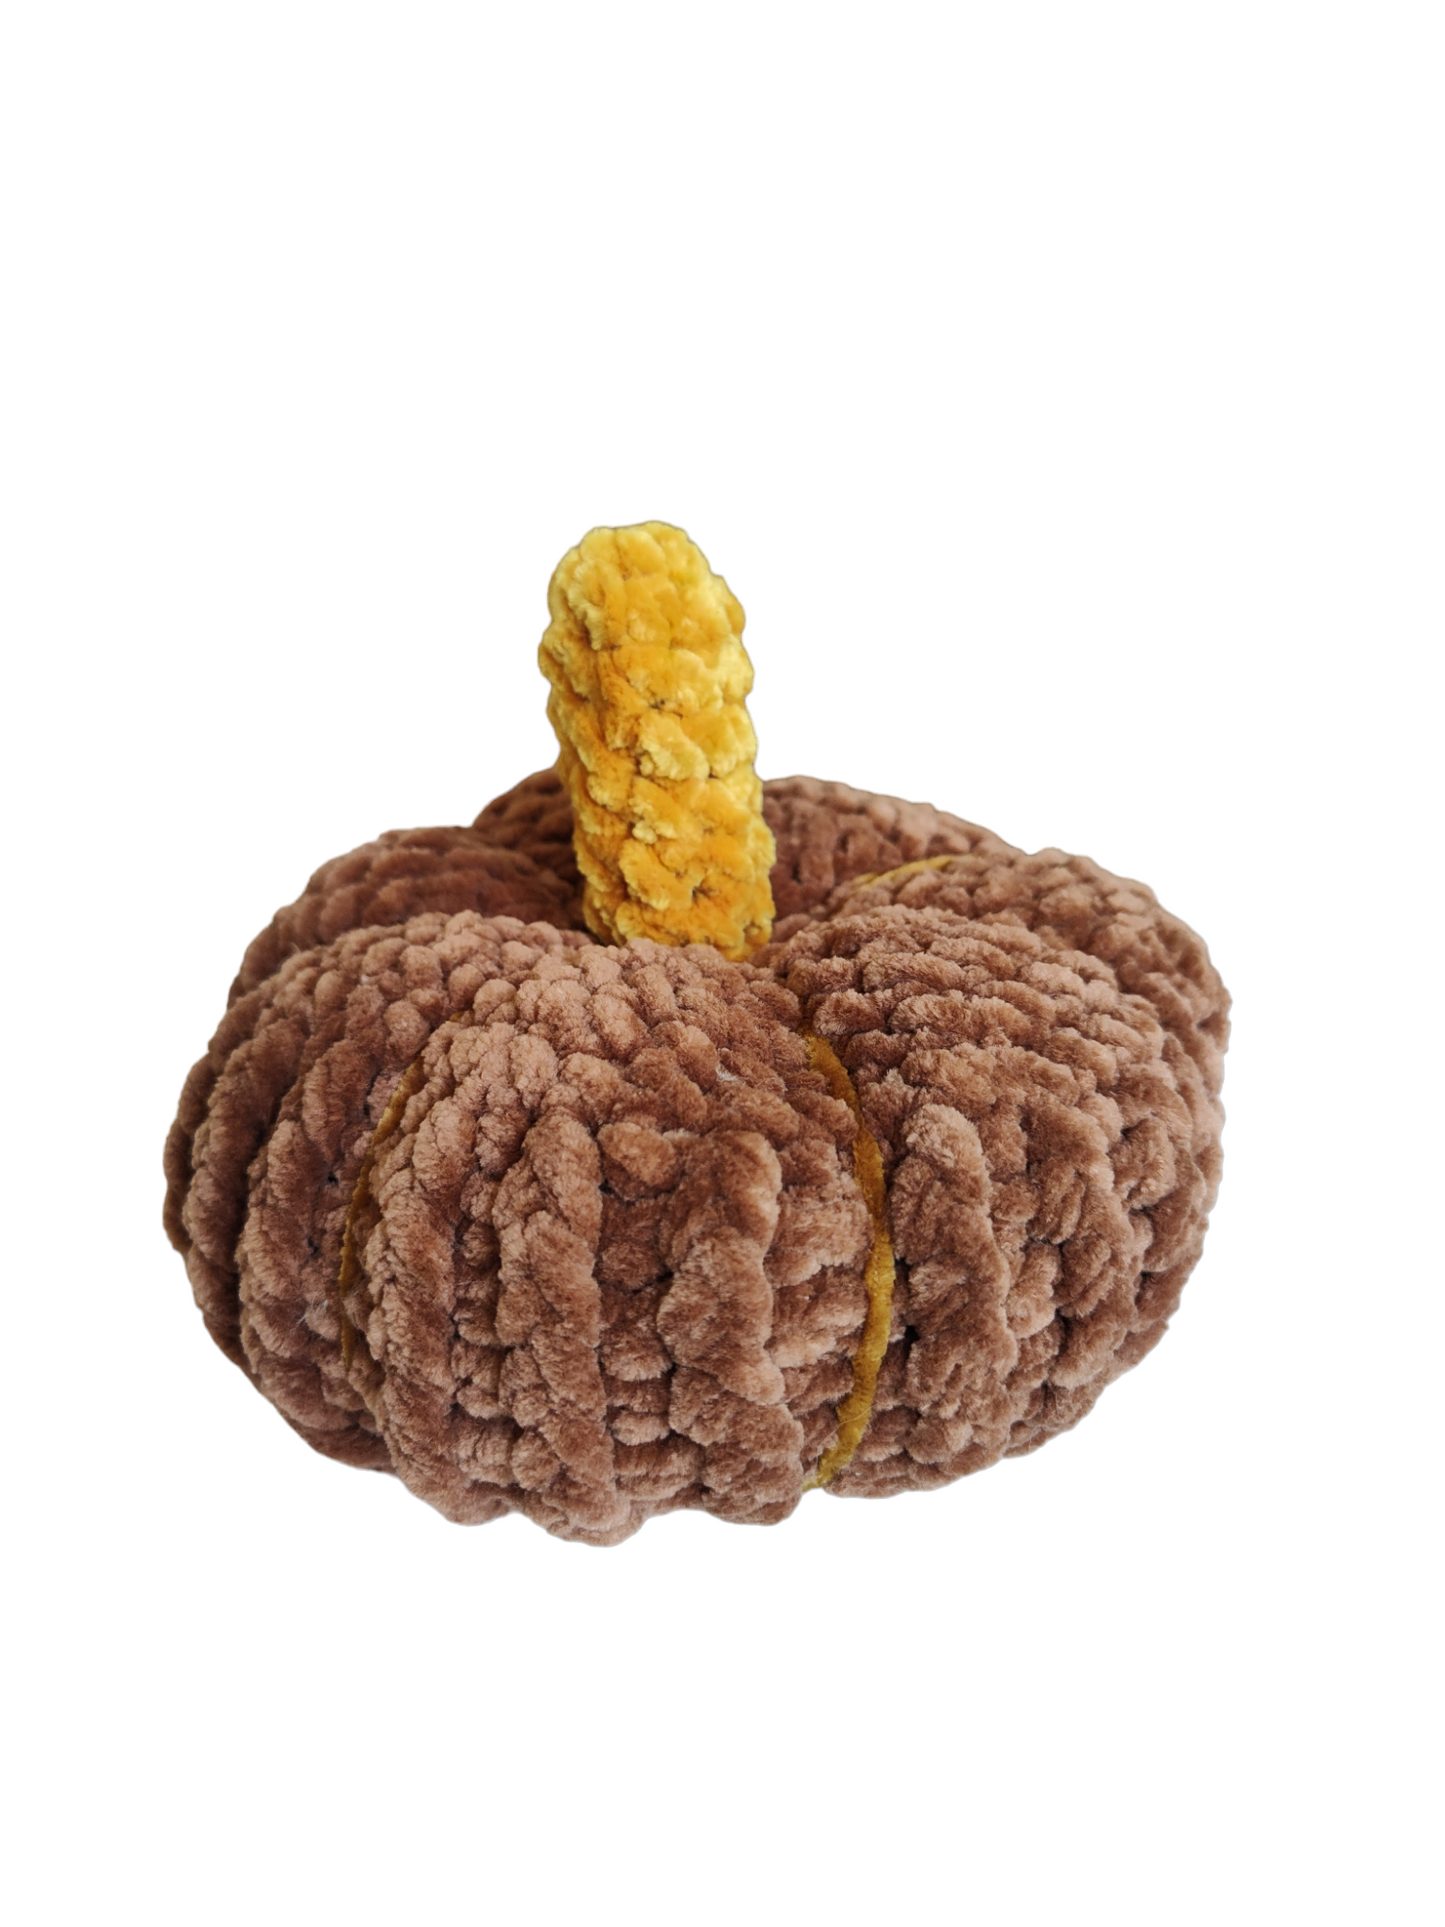 Crochet Pumpkin, Fall Decor